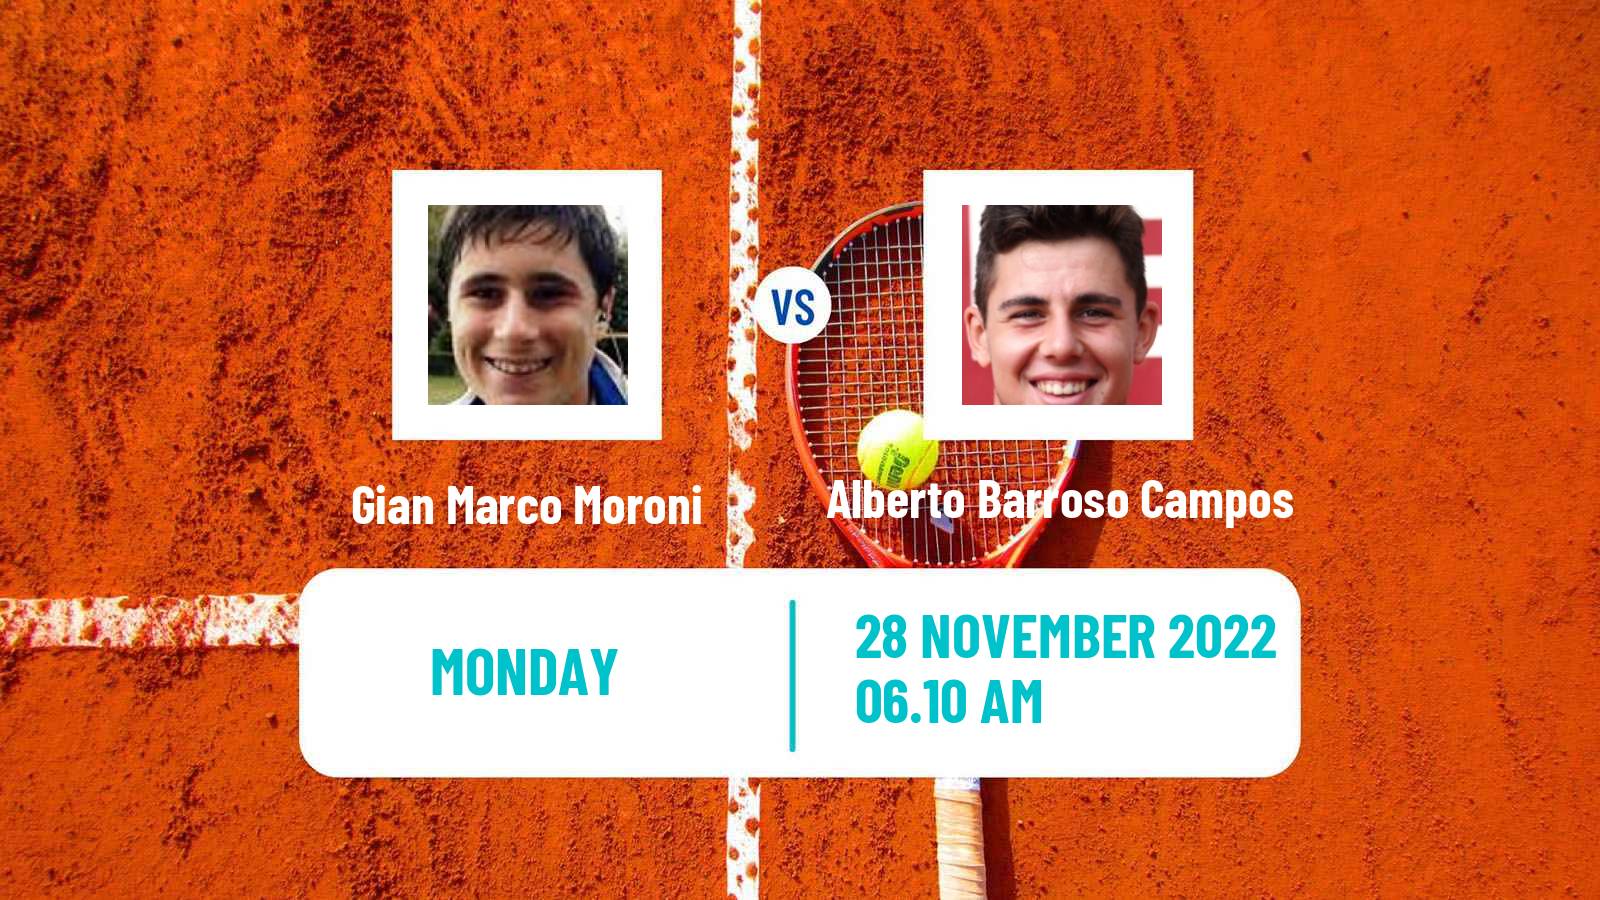 Tennis ATP Challenger Gian Marco Moroni - Alberto Barroso Campos